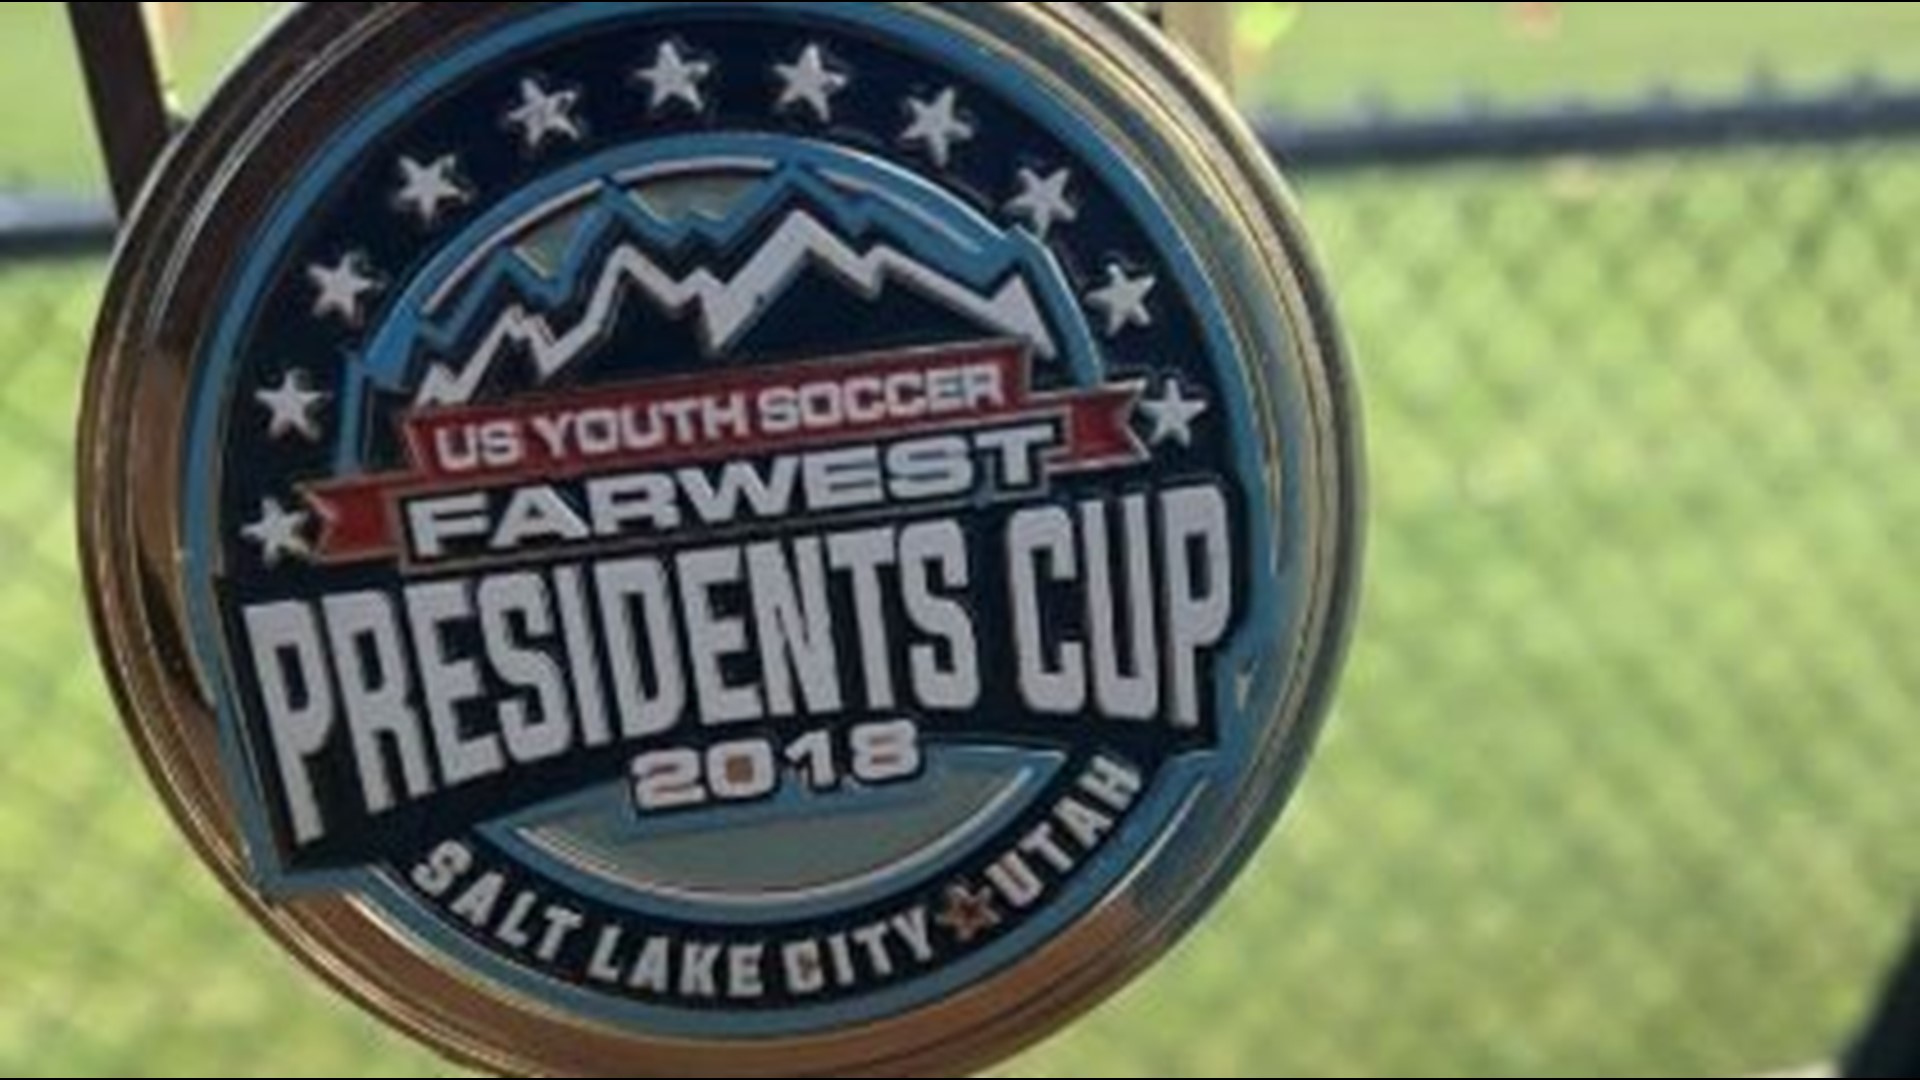 Three Idaho youth soccer teams headed to National Championships